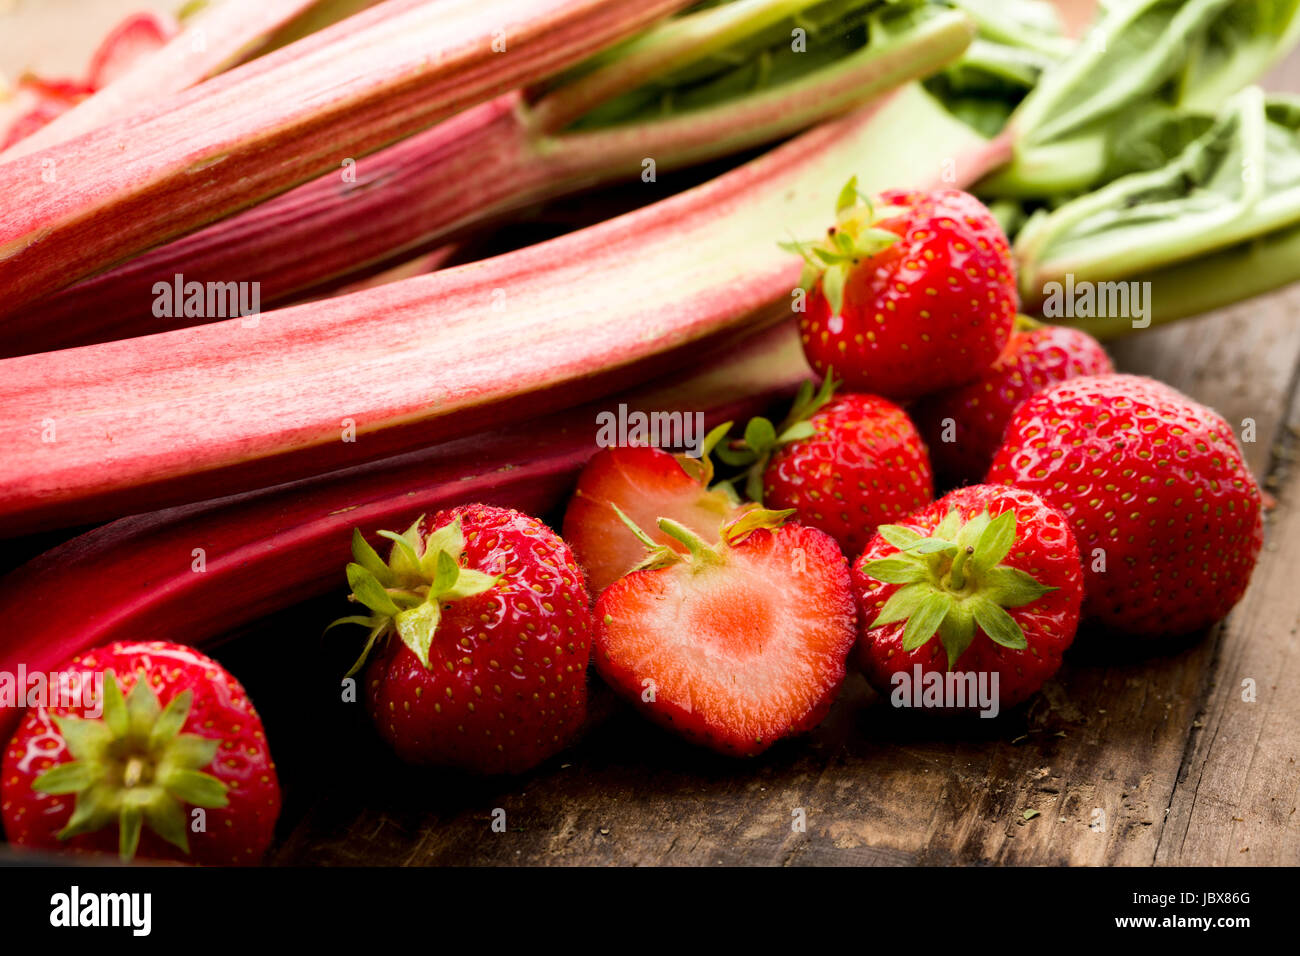 Frischer Rhababer und Erdbeeren auf einen Holz untergrund Stock Photo